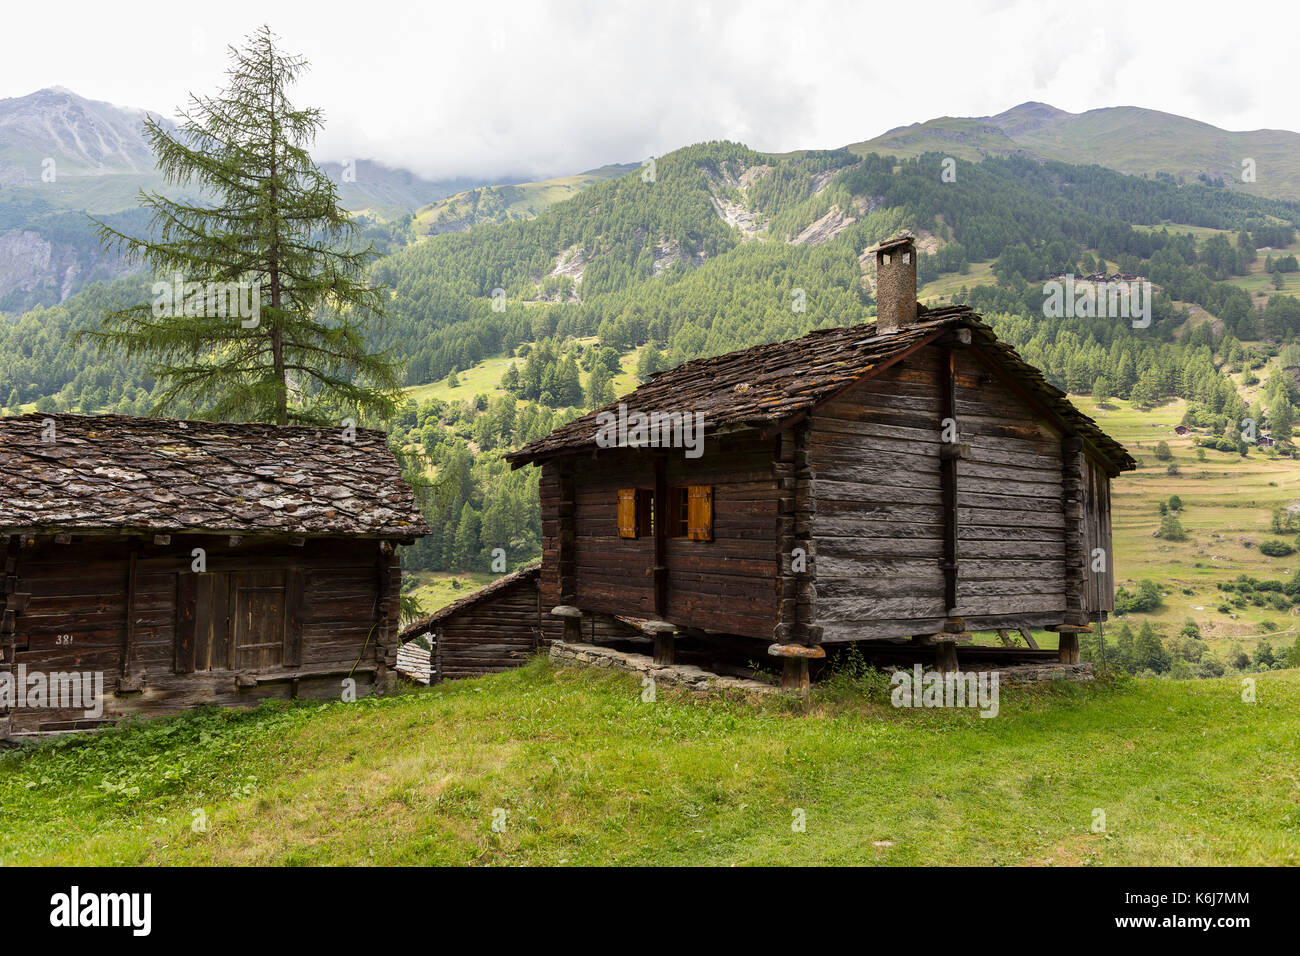 Les hauderes, Svizzera - cabina tradizionale alpi Pennine. Foto Stock